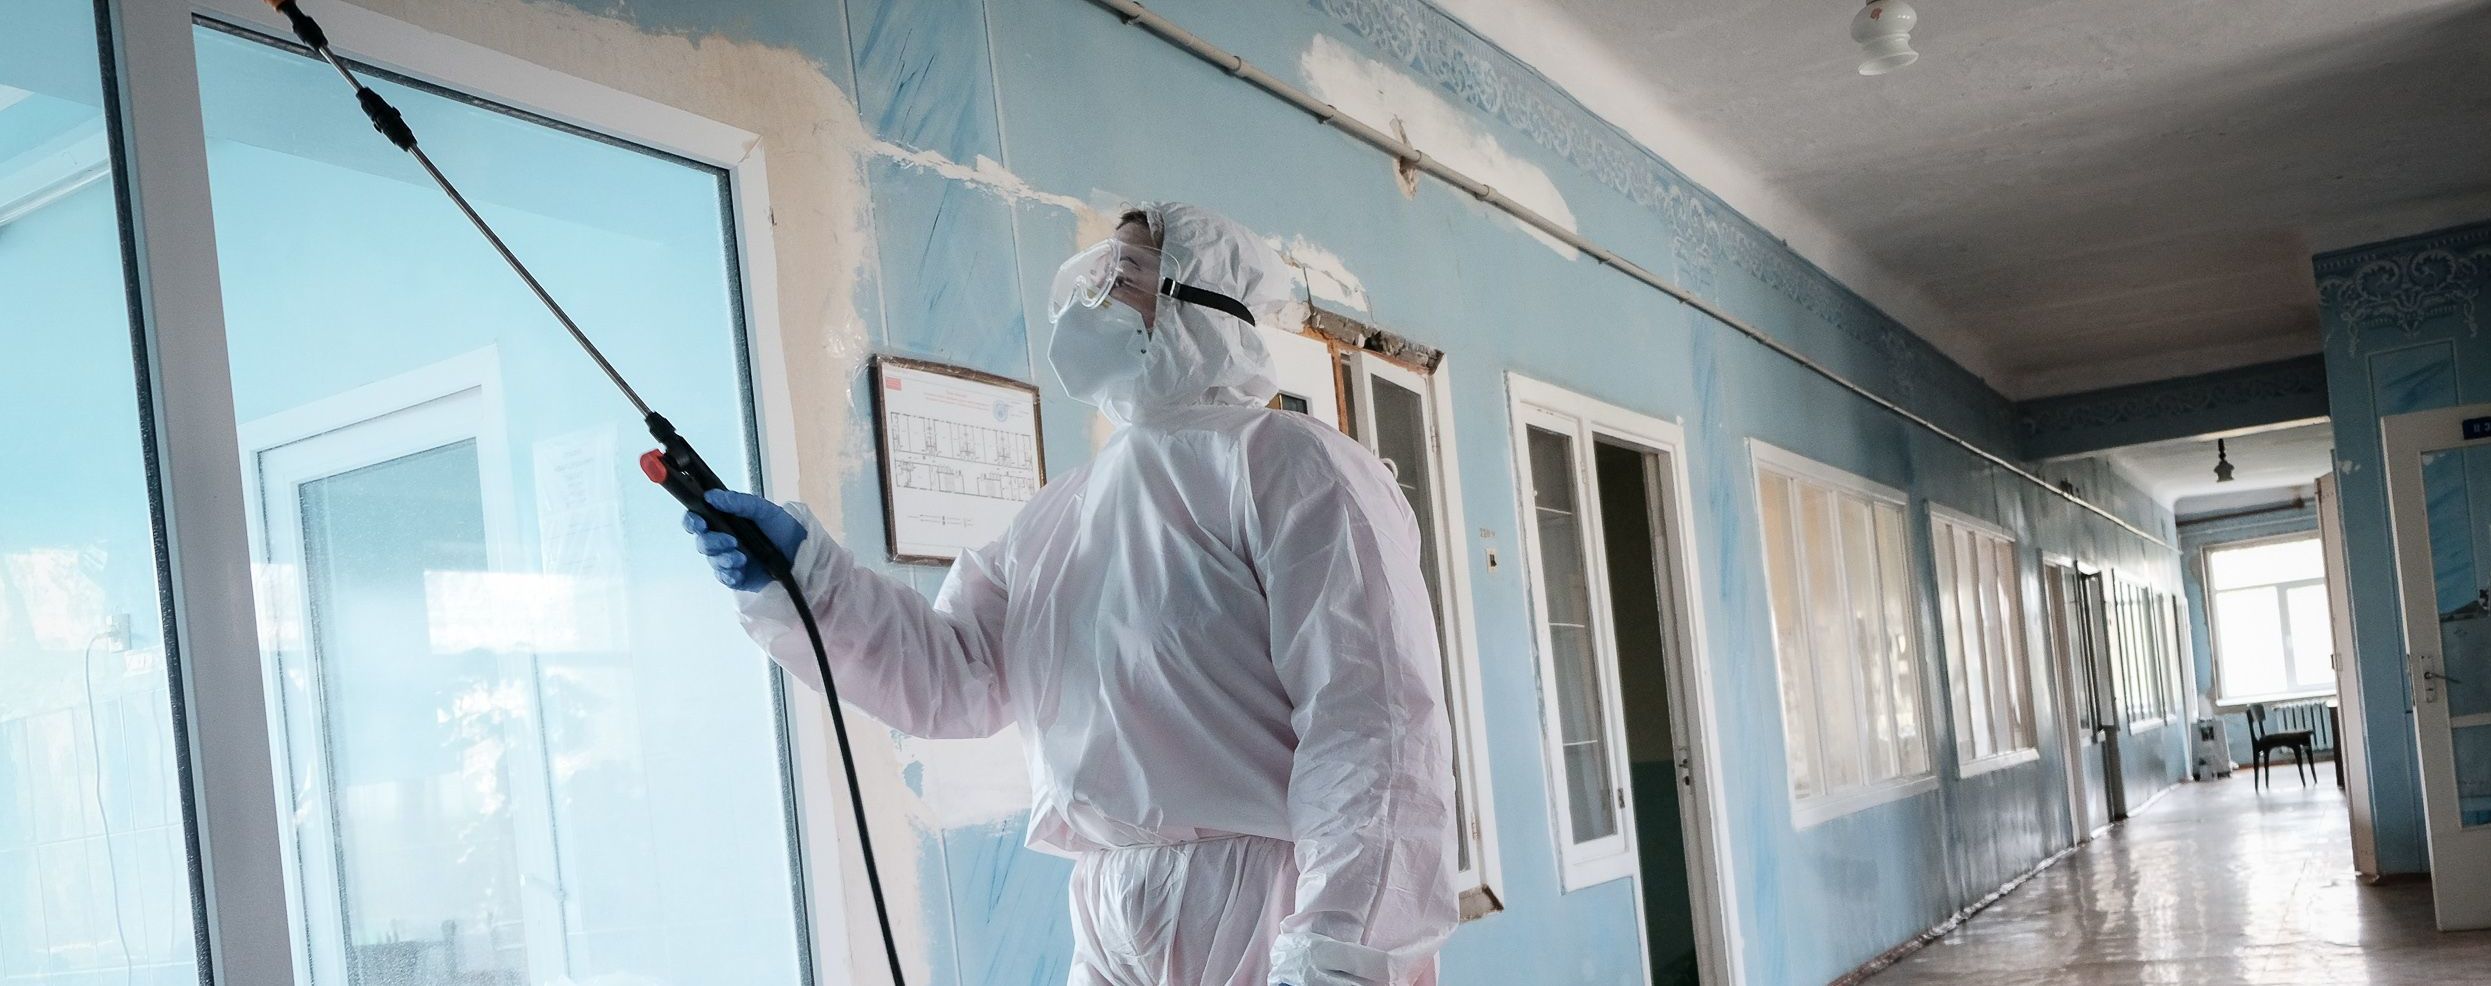 Очередную вспышку коронавируса зафиксировали в общежитии в Переяславе